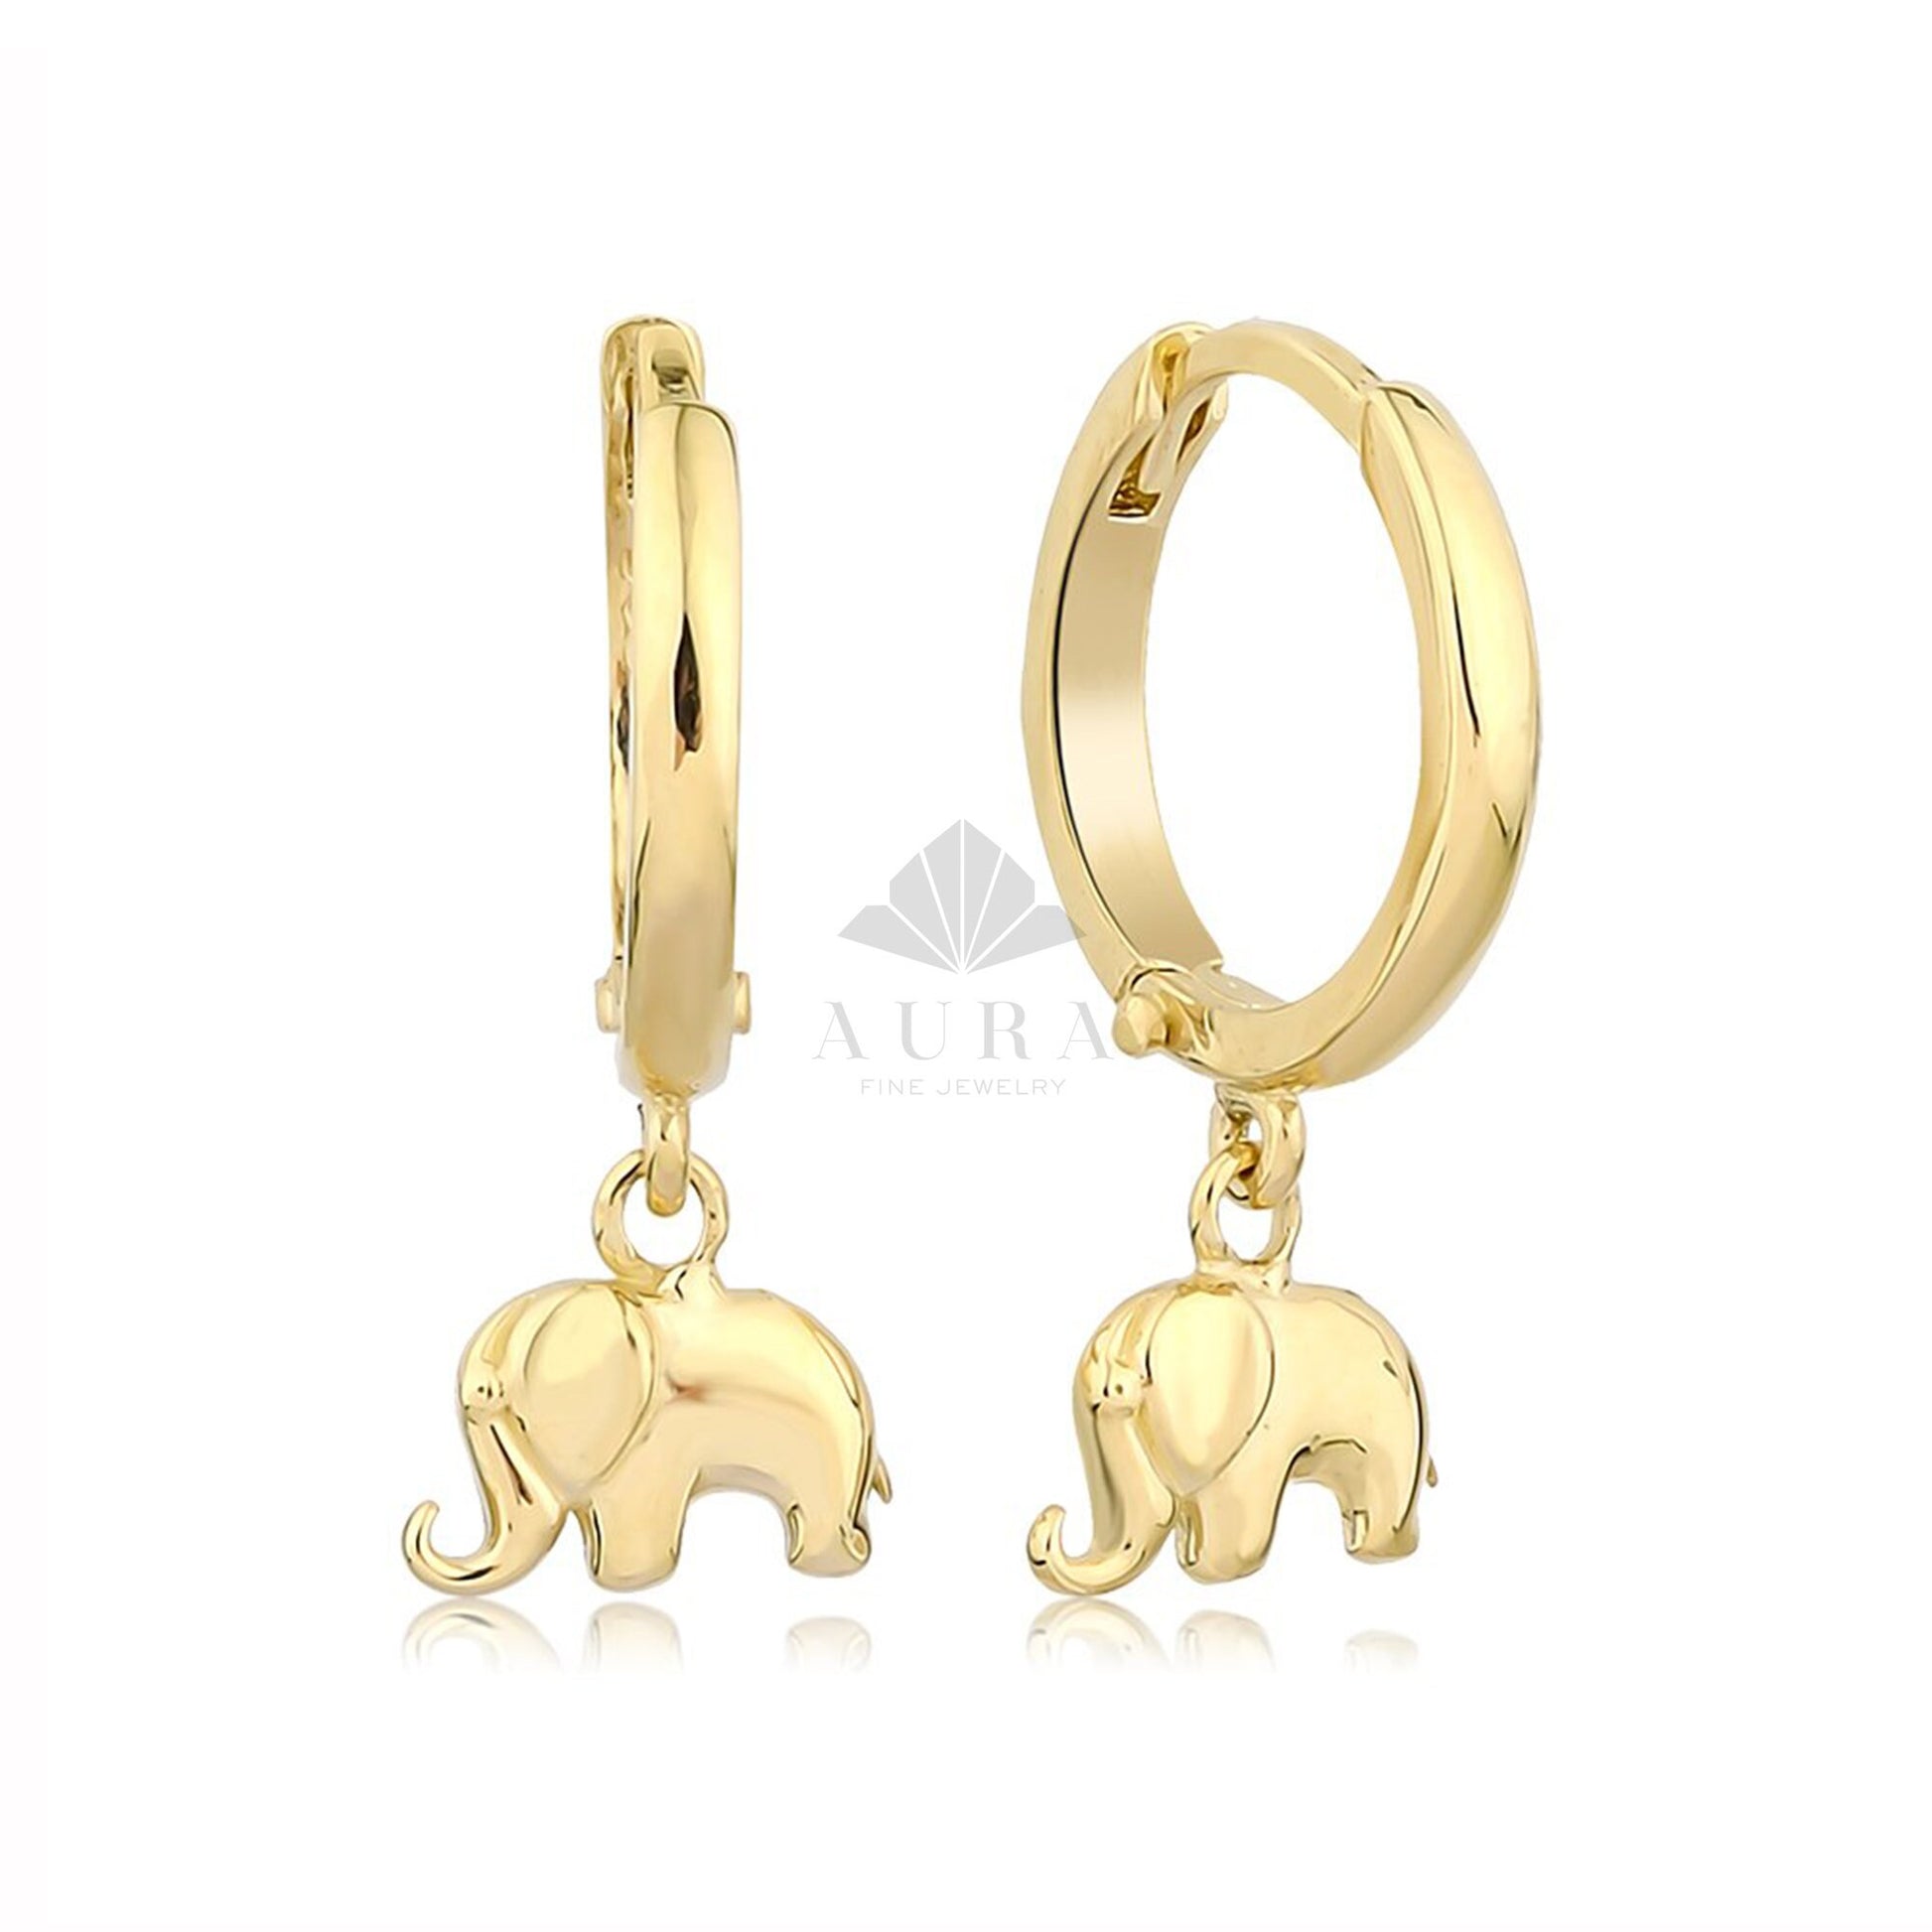 14K Gold Elephant Earrings, Elephant Dangle Earrings, Gold Drop Earrings, Hoop Earrings, Statement Cute Earrings, Minimalist Earrings